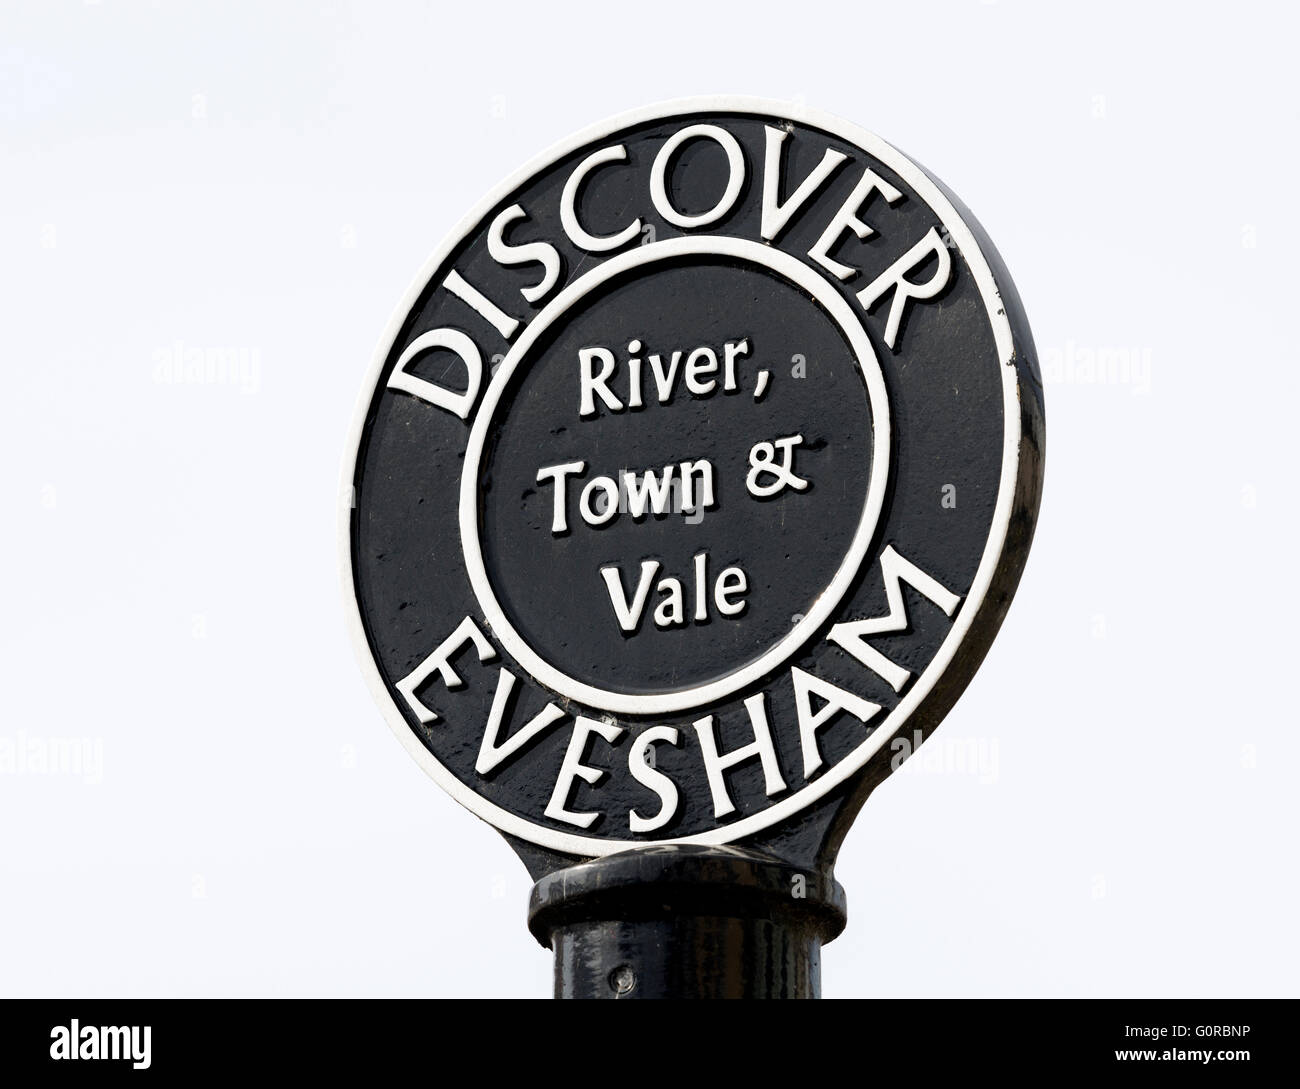 Discover Evesham sign, Evesham, Worcestershire, England, UK Stock Photo